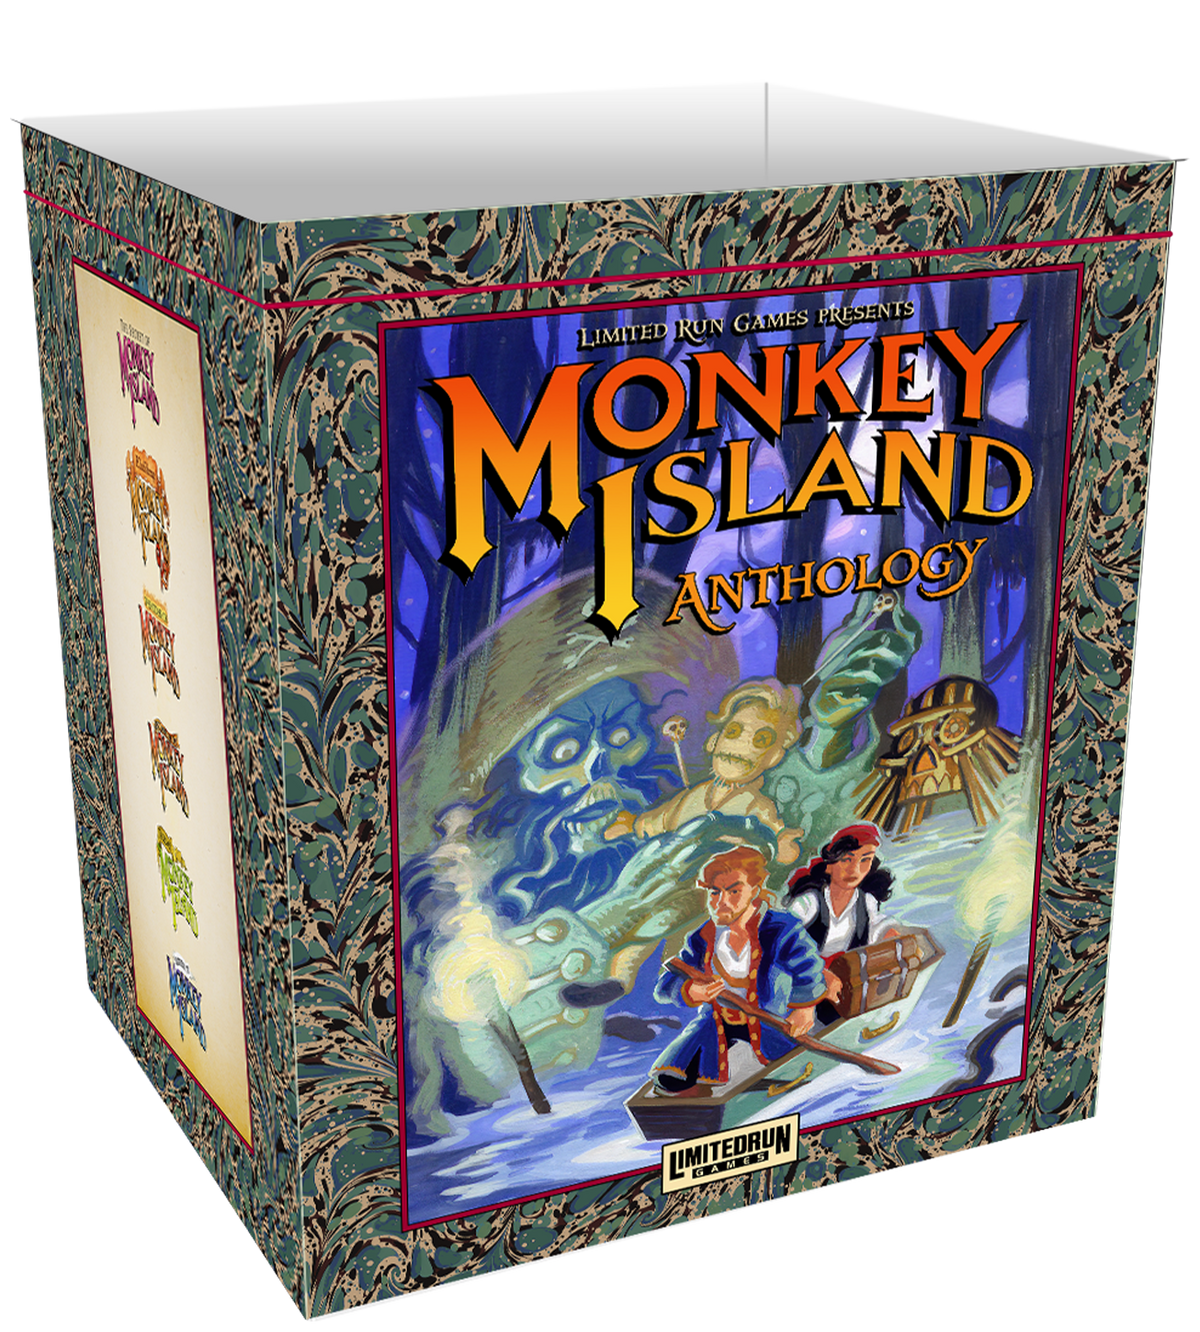 Return to Monkey Island Anthology Upgrade Kit